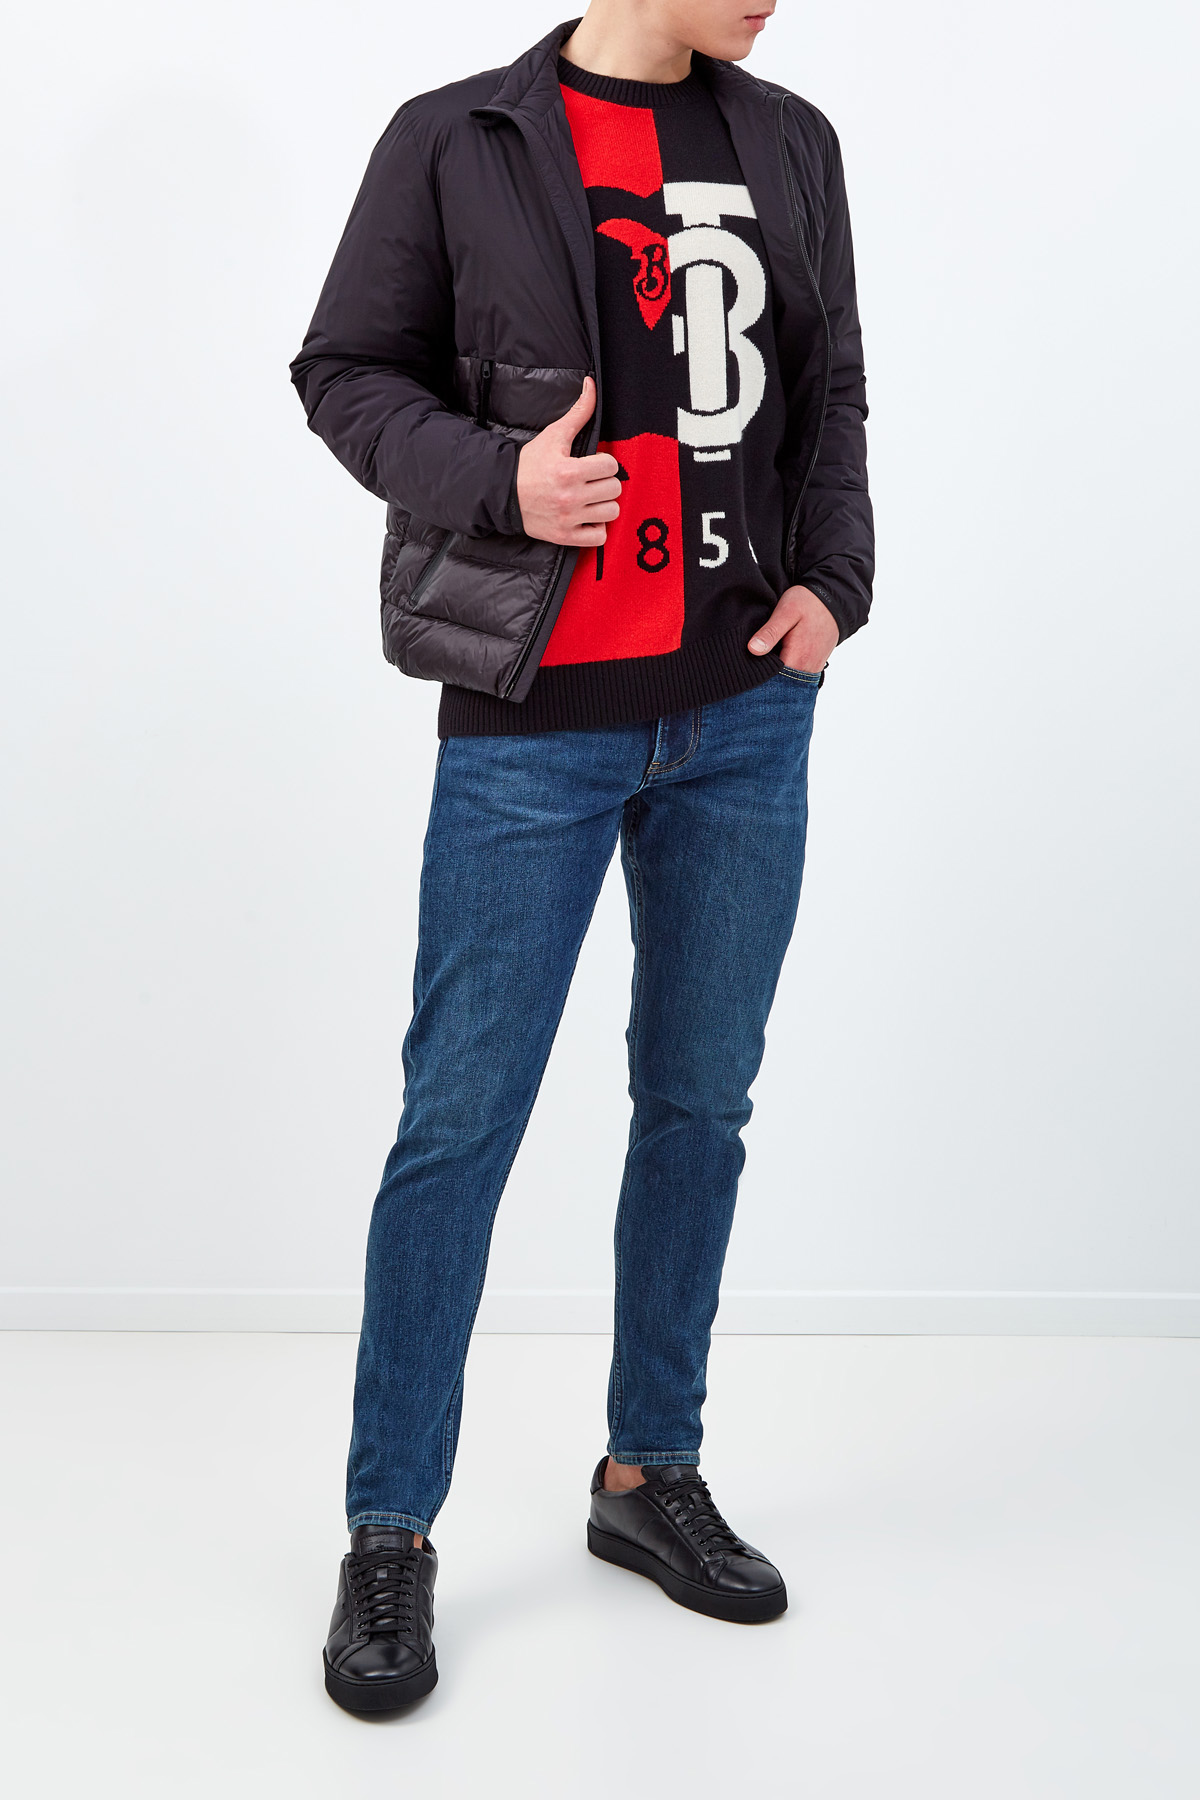 Кашемировый джемпер с макро-логотипом BURBERRY, цвет мульти, размер XL;M - фото 2